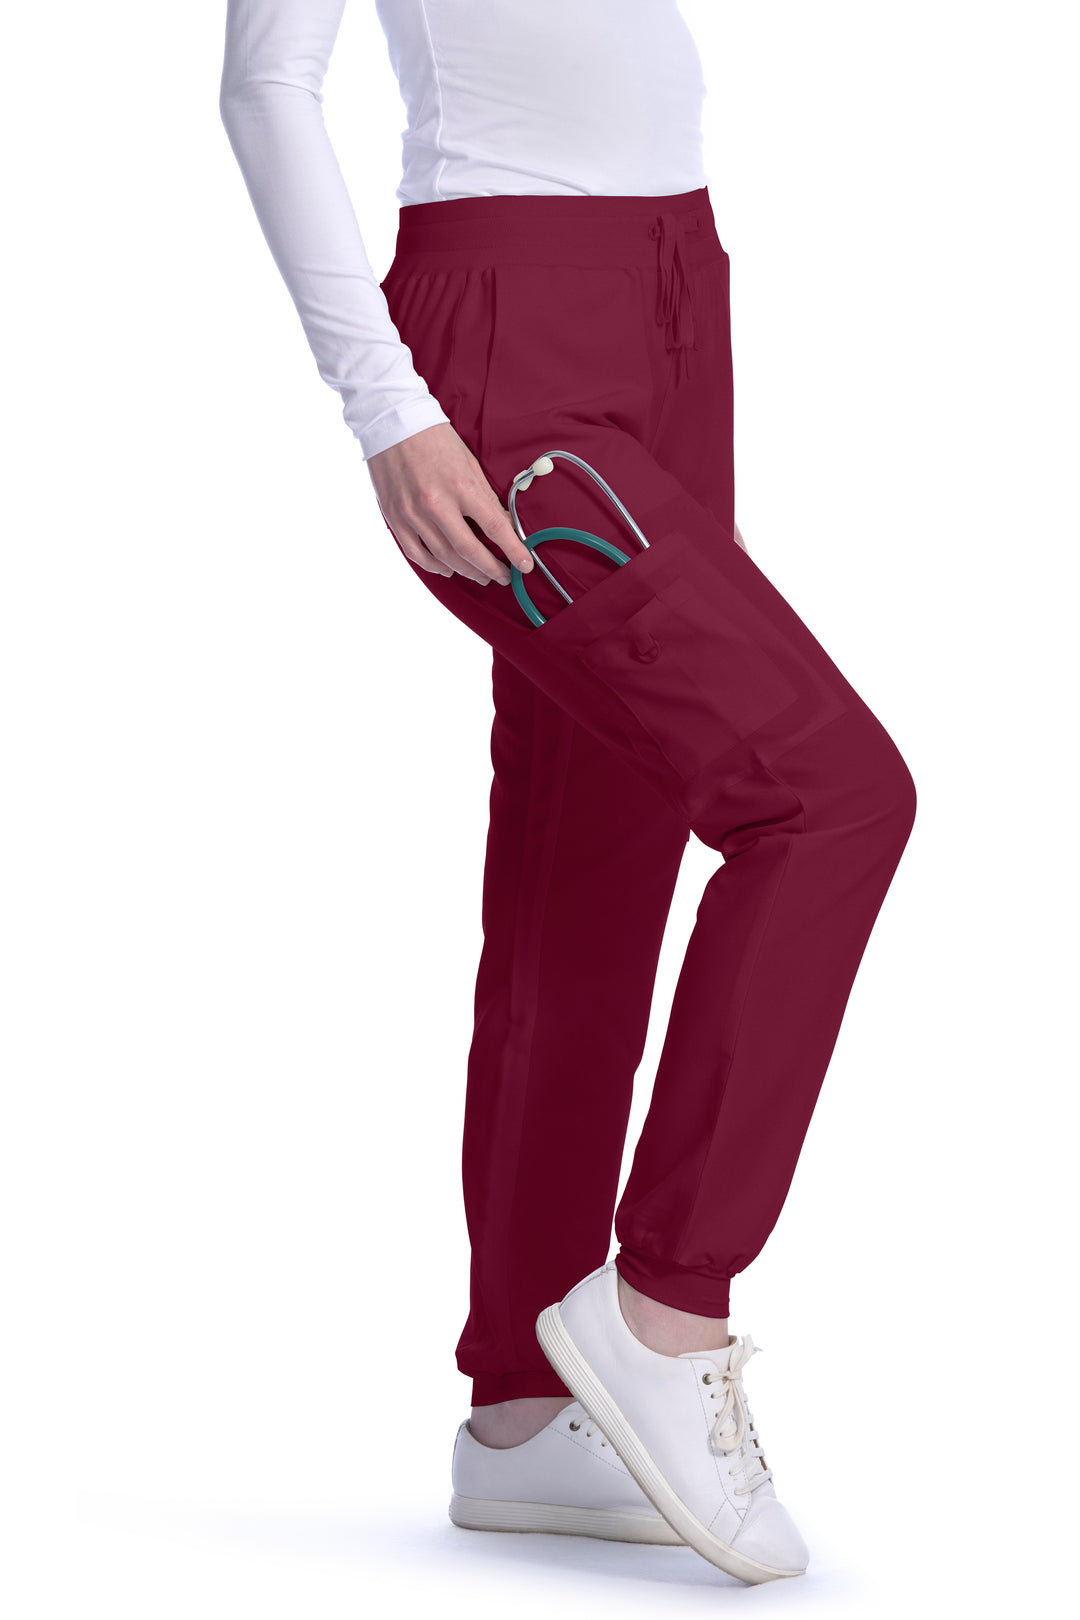 Zinnia Modern Yoga-Style ProfessionalcScrub Pants - Style 18-1044